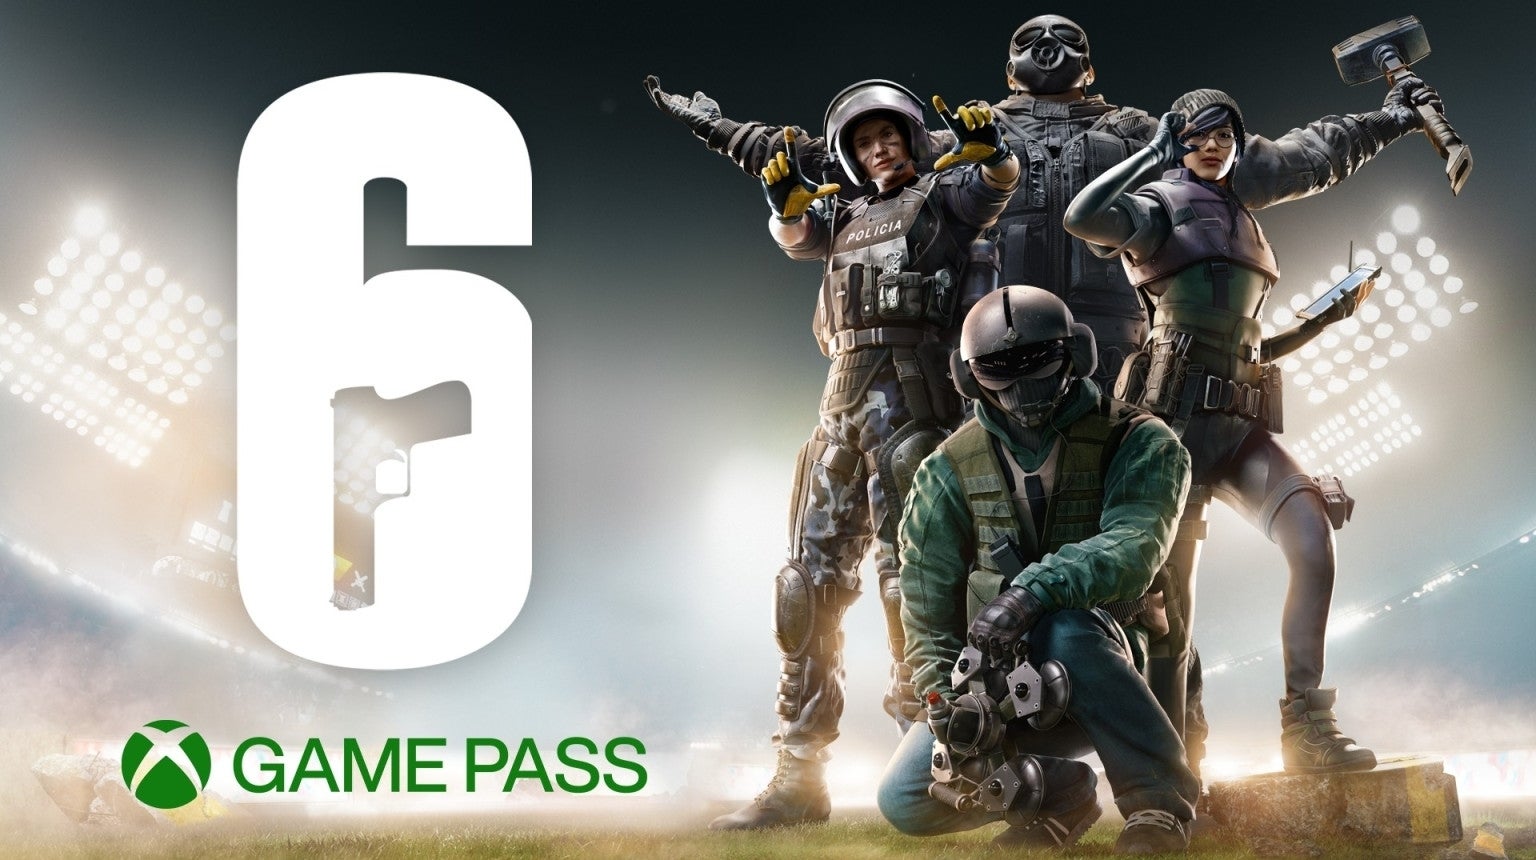 Imagen para La cuenta oficial de Xbox Games Pass da pistas de la llegada de Rainbow Six Siege al servicio